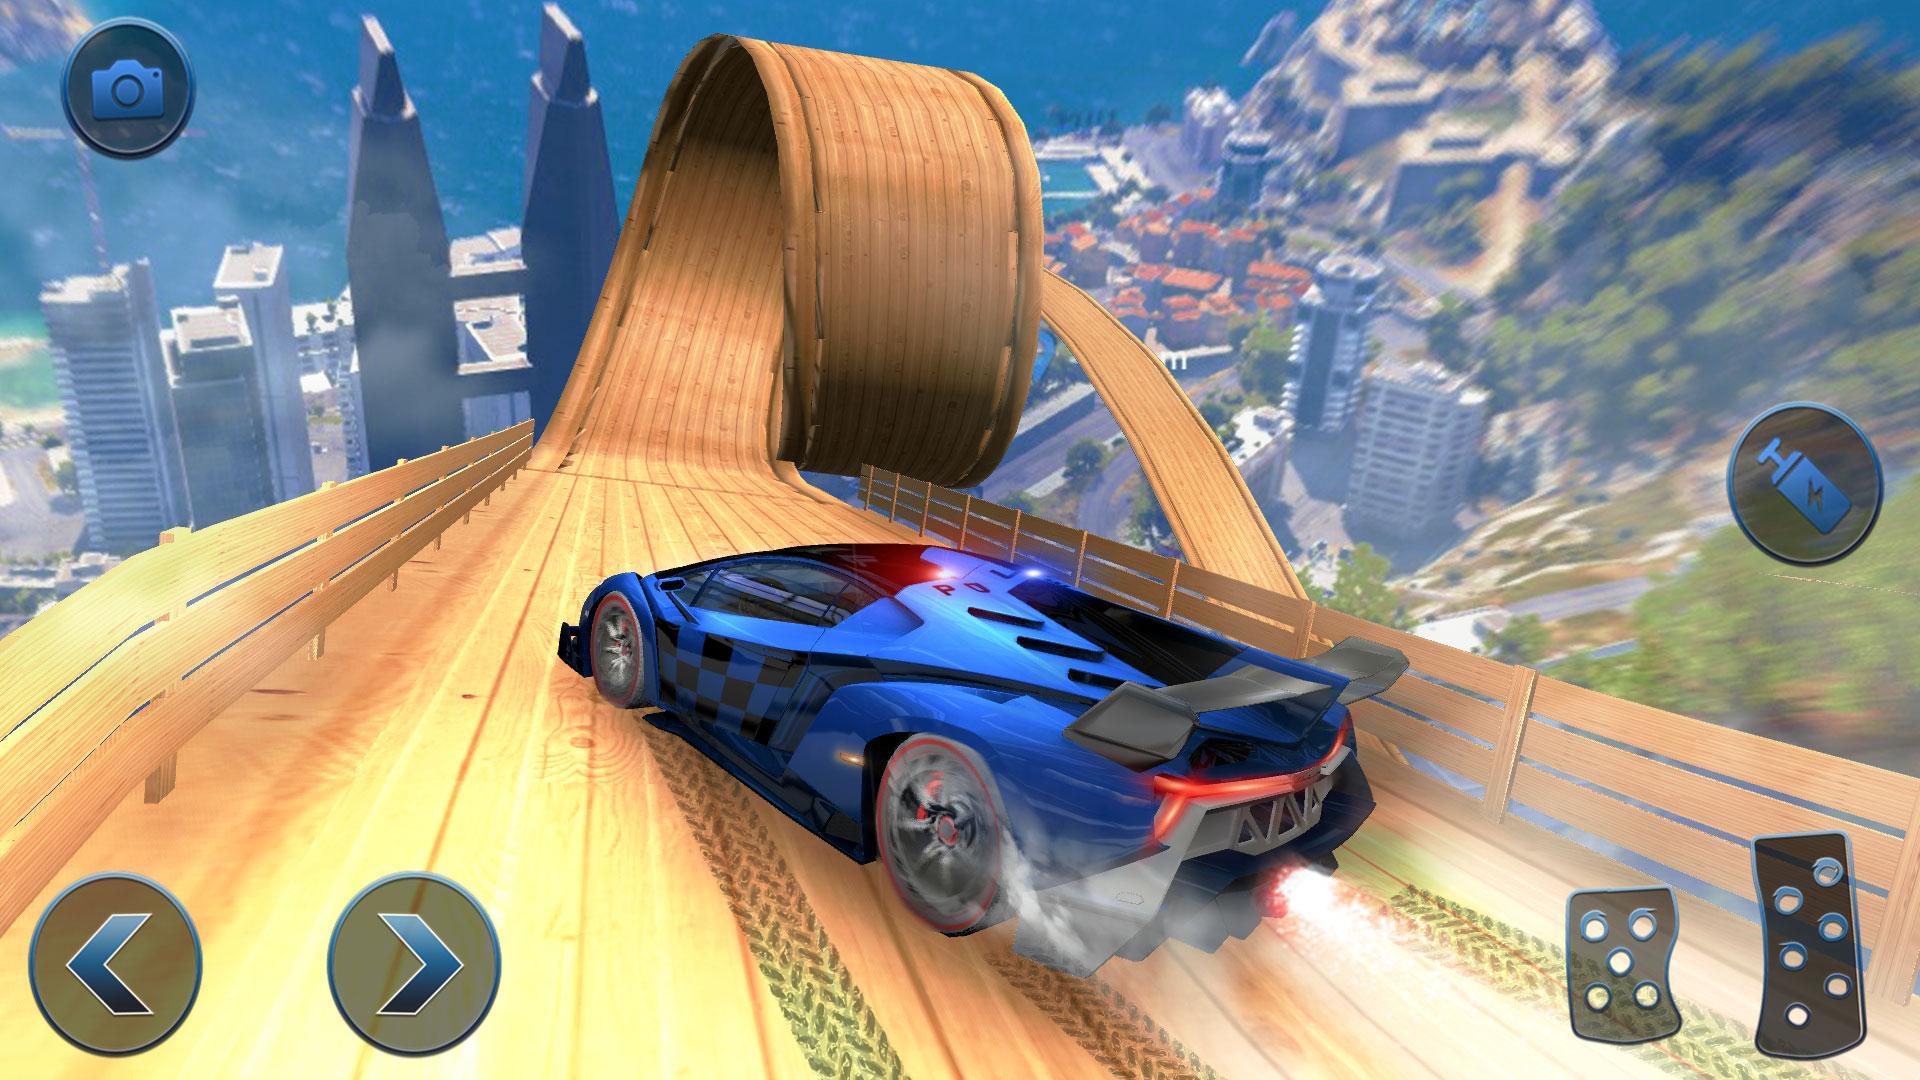 Screenshot 1 of Polisi AS Mobil Terbang Mega Ramp Stunt Racing Games 1.0.4